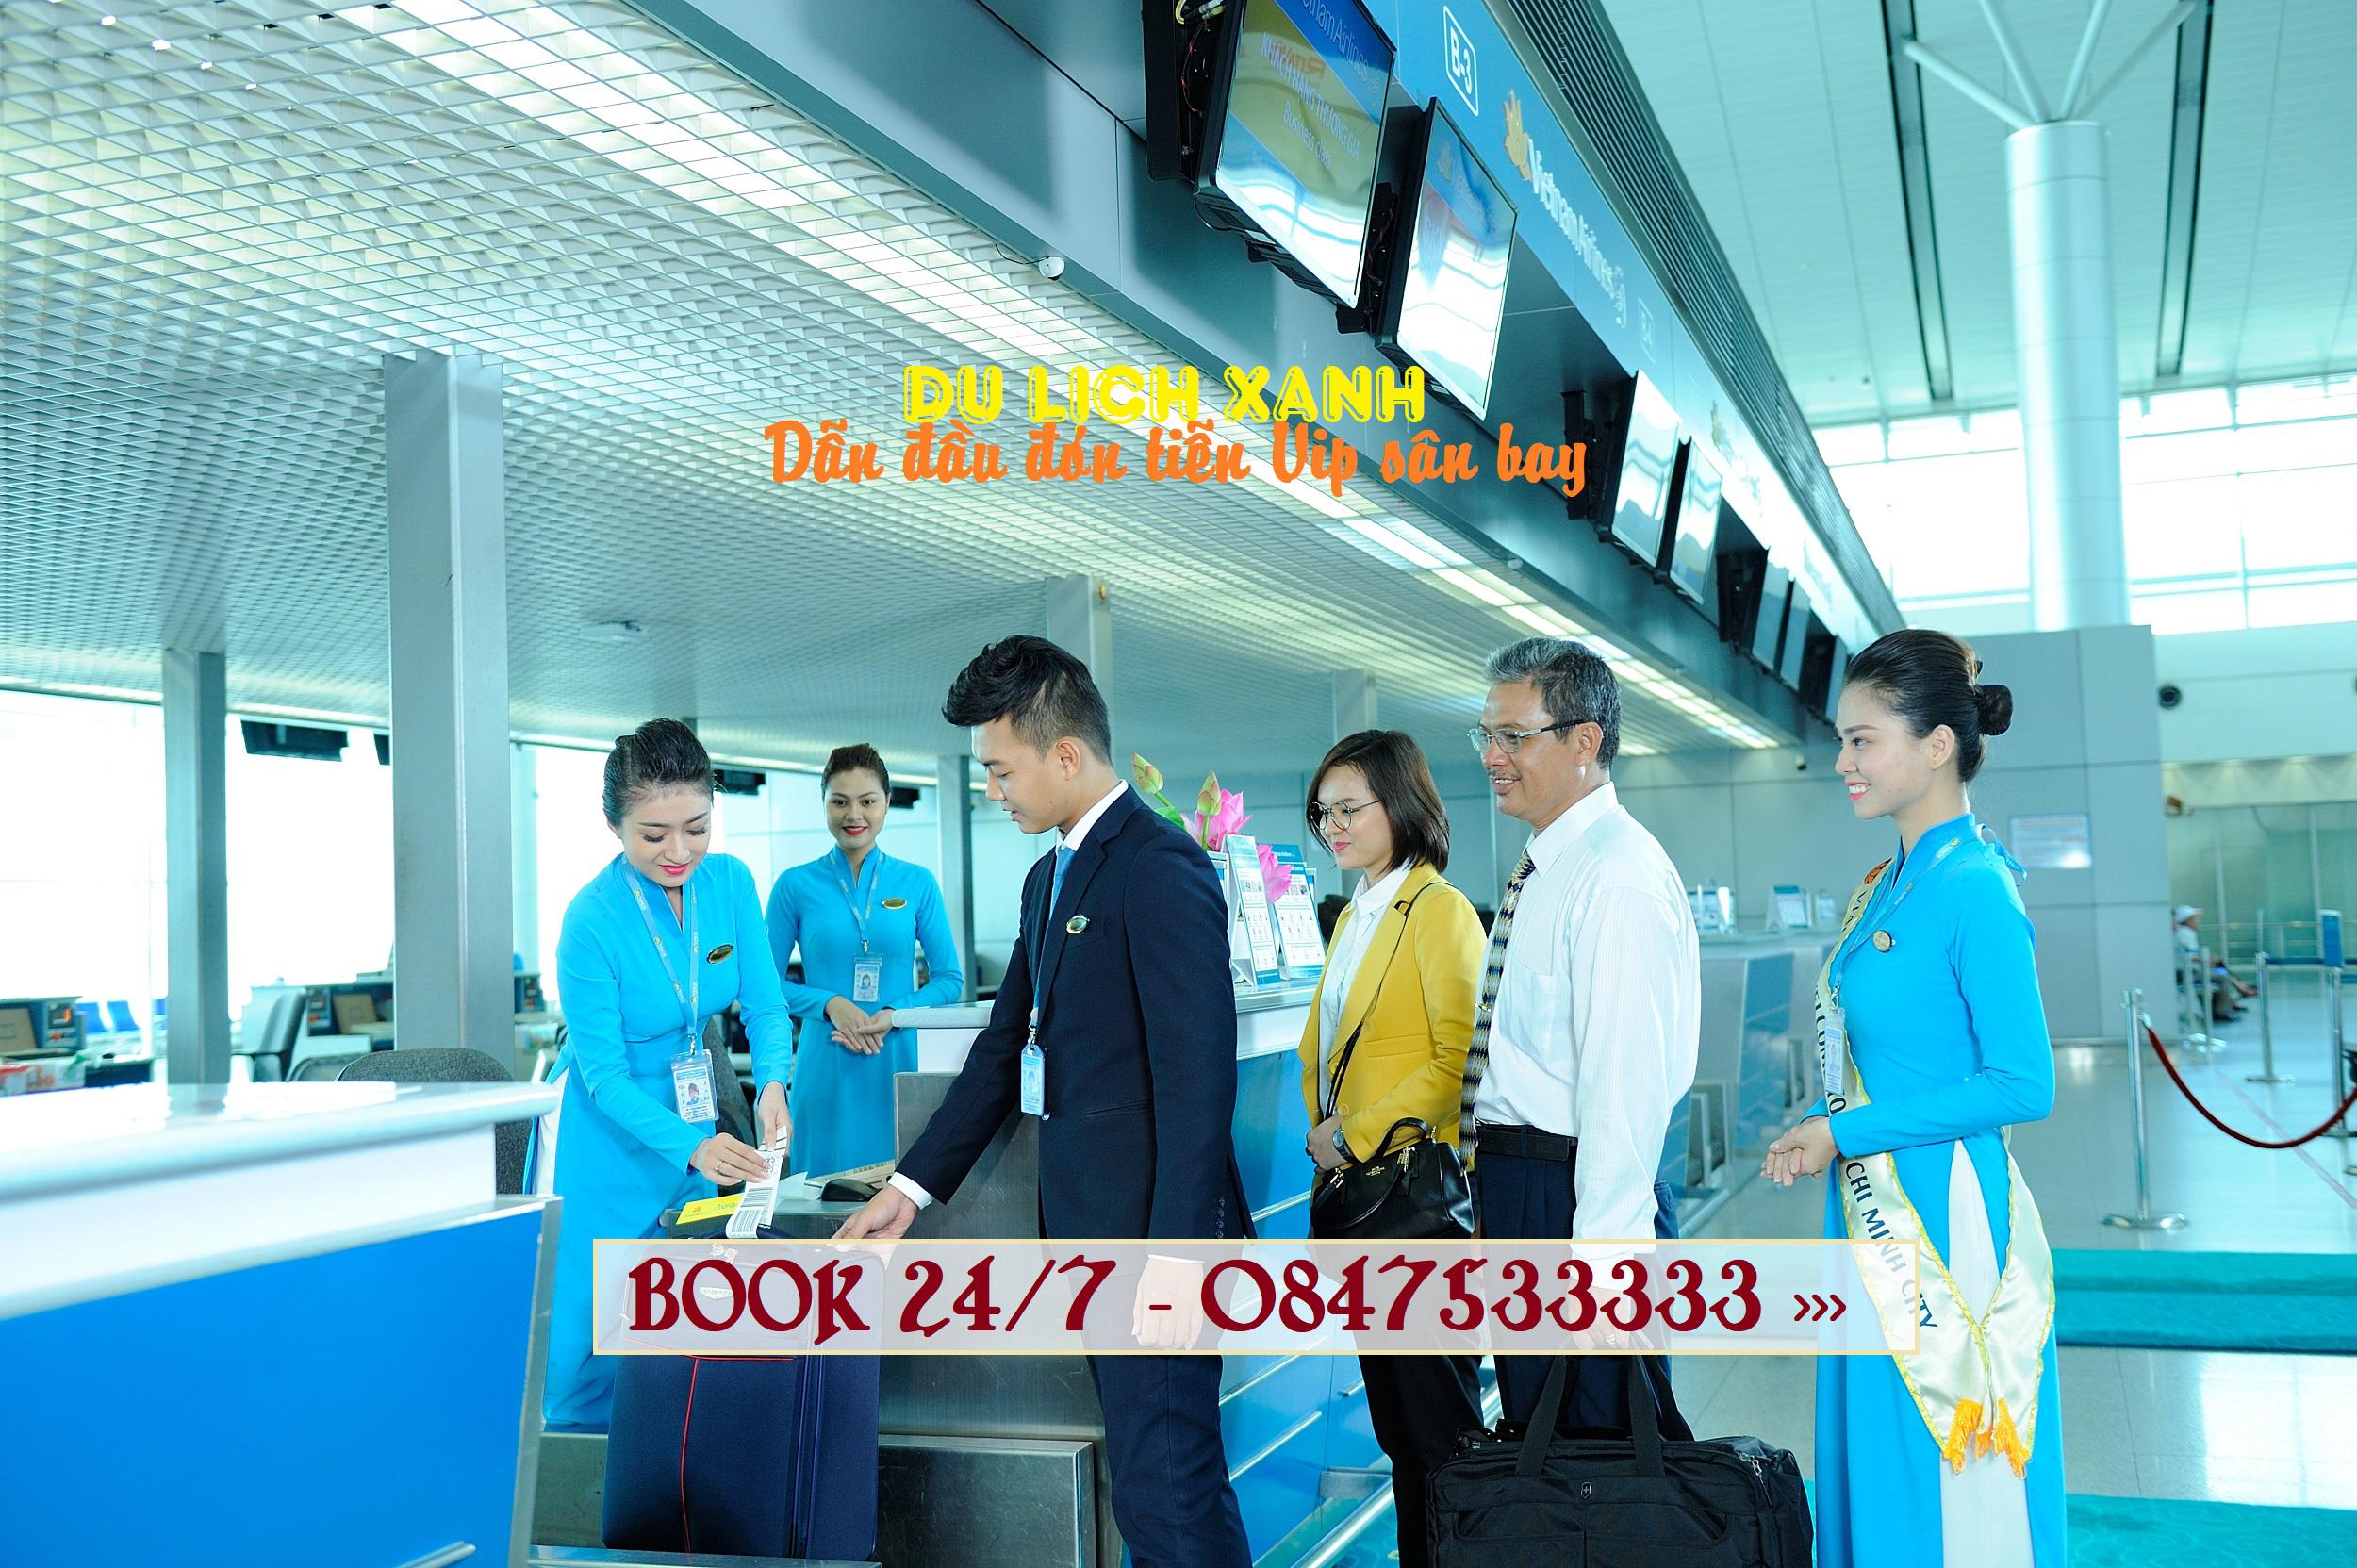 Dịch vụ đón tiễn VIP sân bay Cam Ranh, Nha Trang